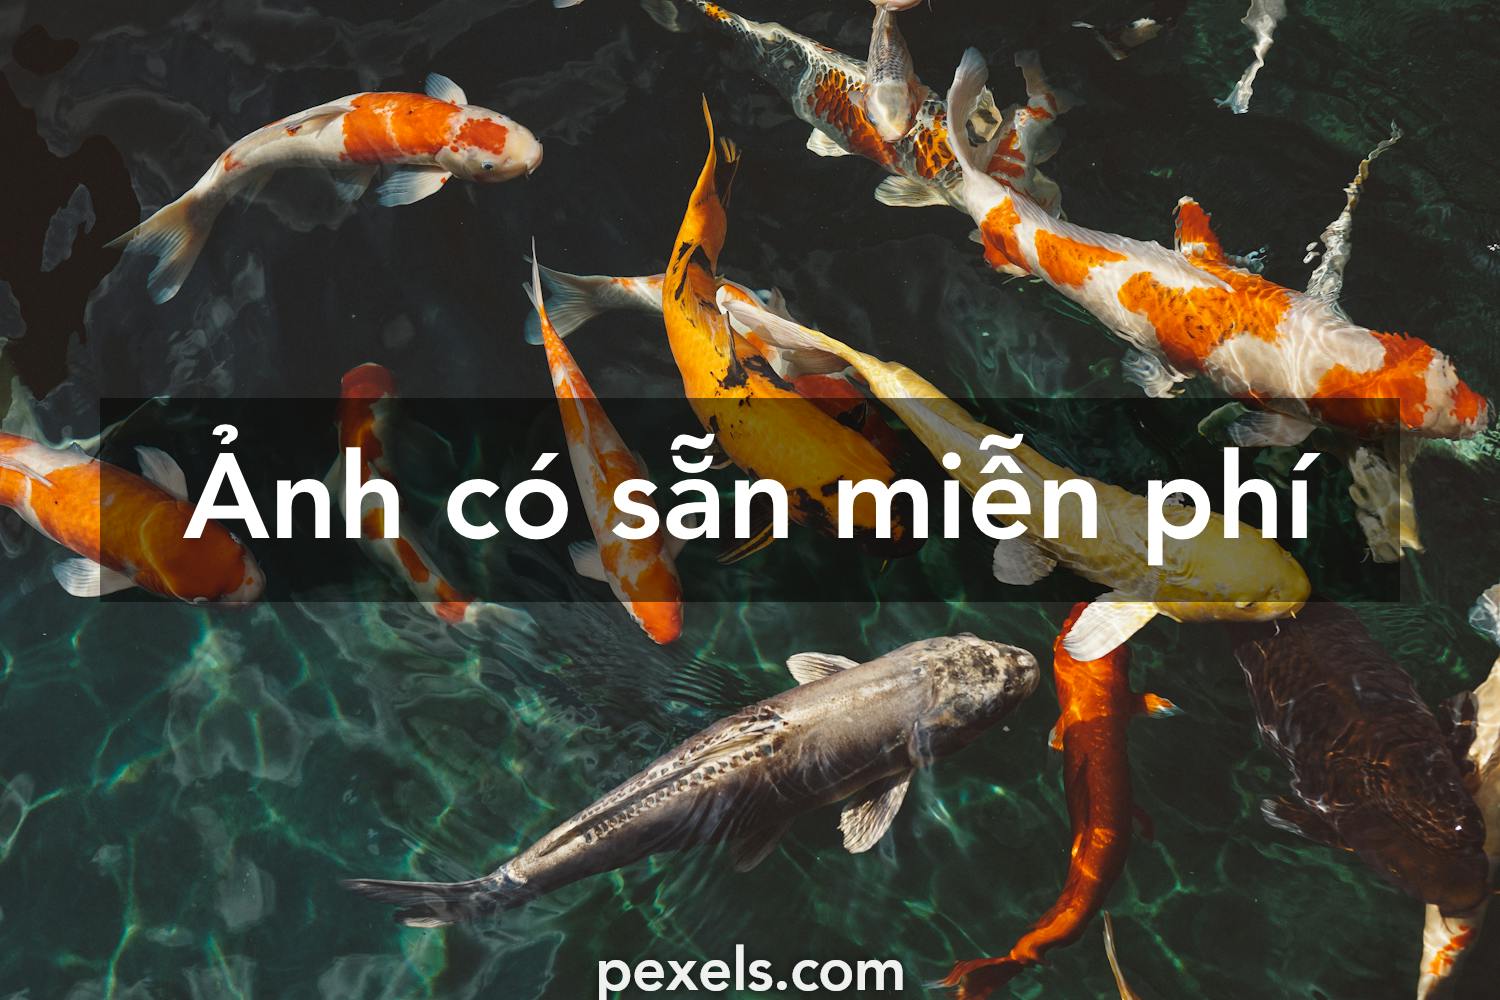 100.000+ ảnh đẹp nhất về Cá Koi · Tải xuống miễn phí 100% · Ảnh ...